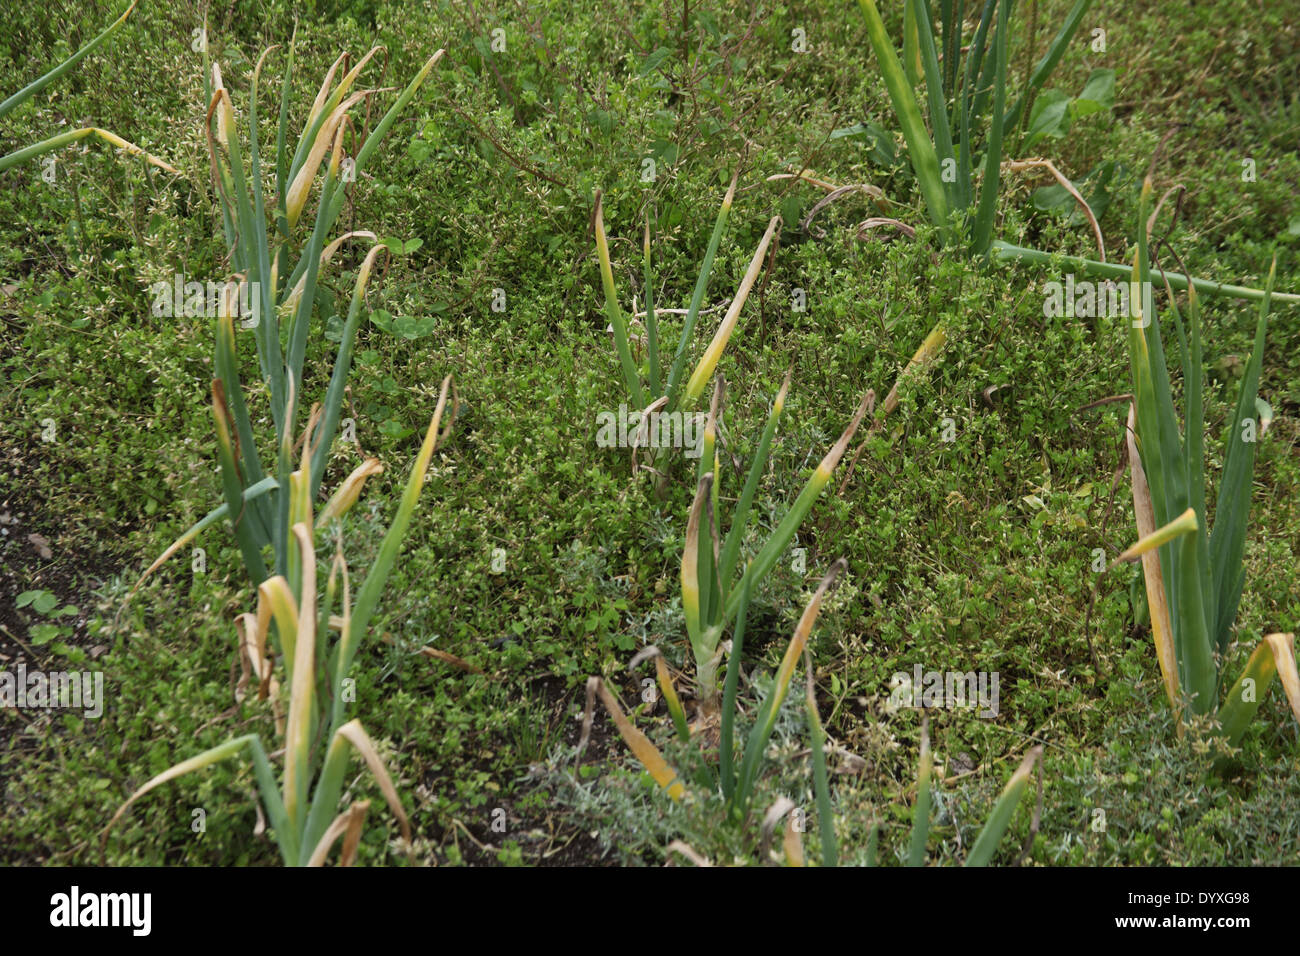 La couverture du sol pour les mauvaises herbes annuelles permettent de protéger l'oignons de maturation Banque D'Images